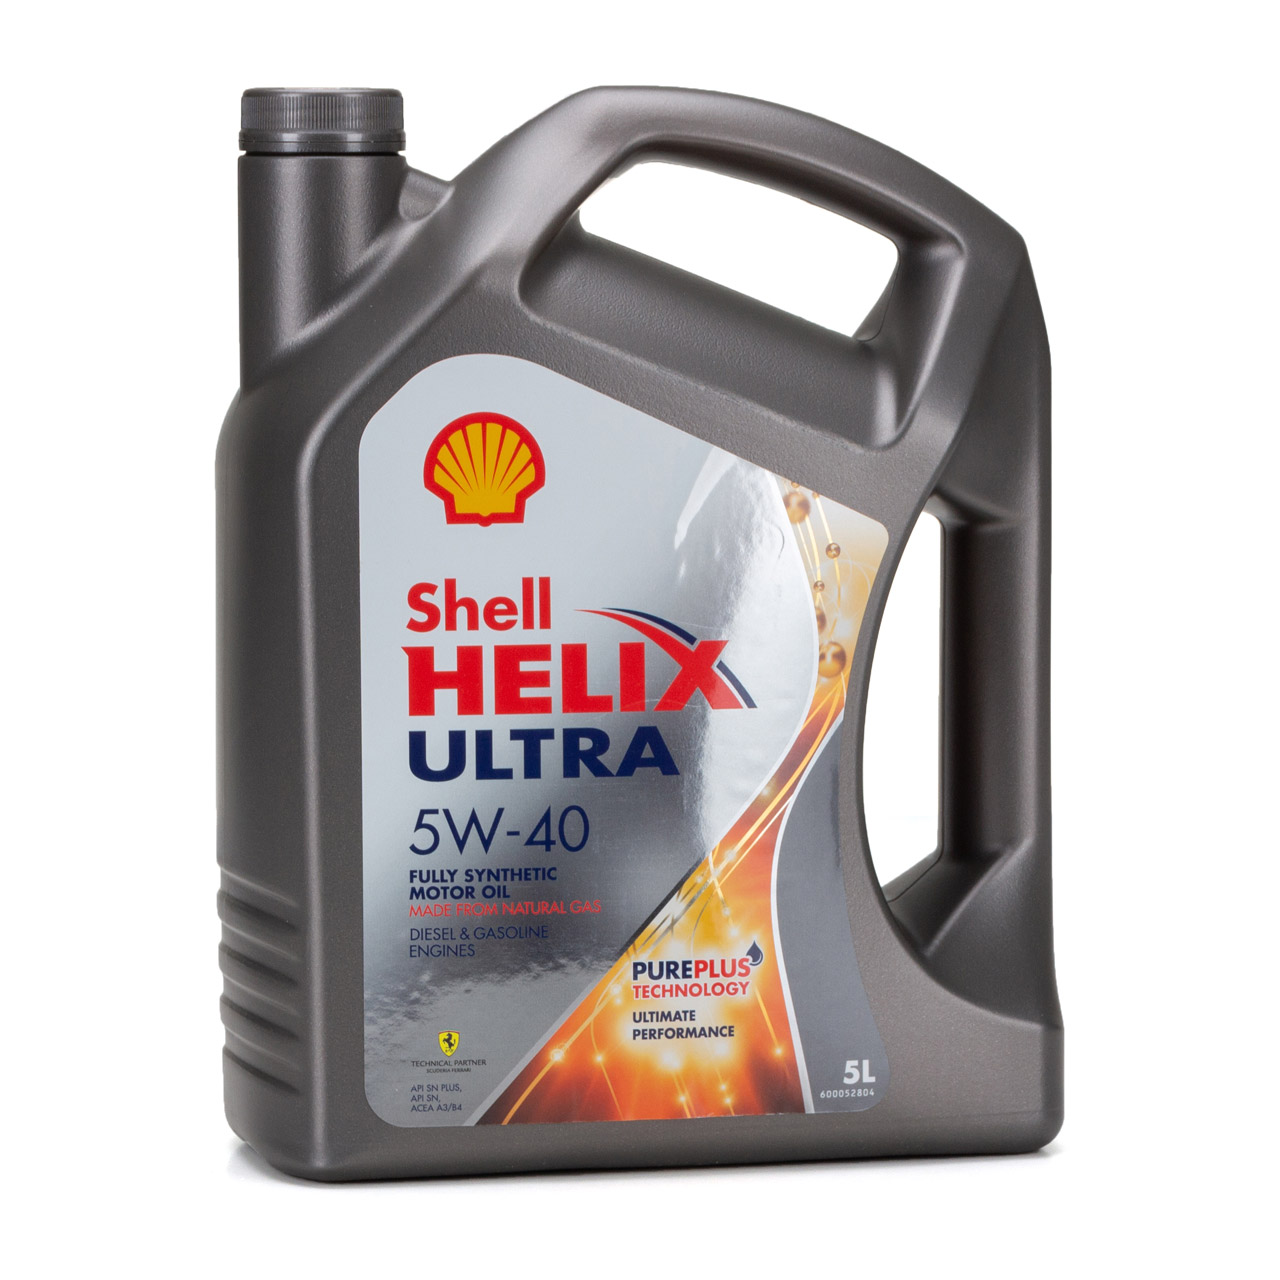 SHELL Motoröl Öl HELIX ULTRA 5W-40 5W40 MB 226/229.5 VW 502/505.00 - 5L 5 Liter